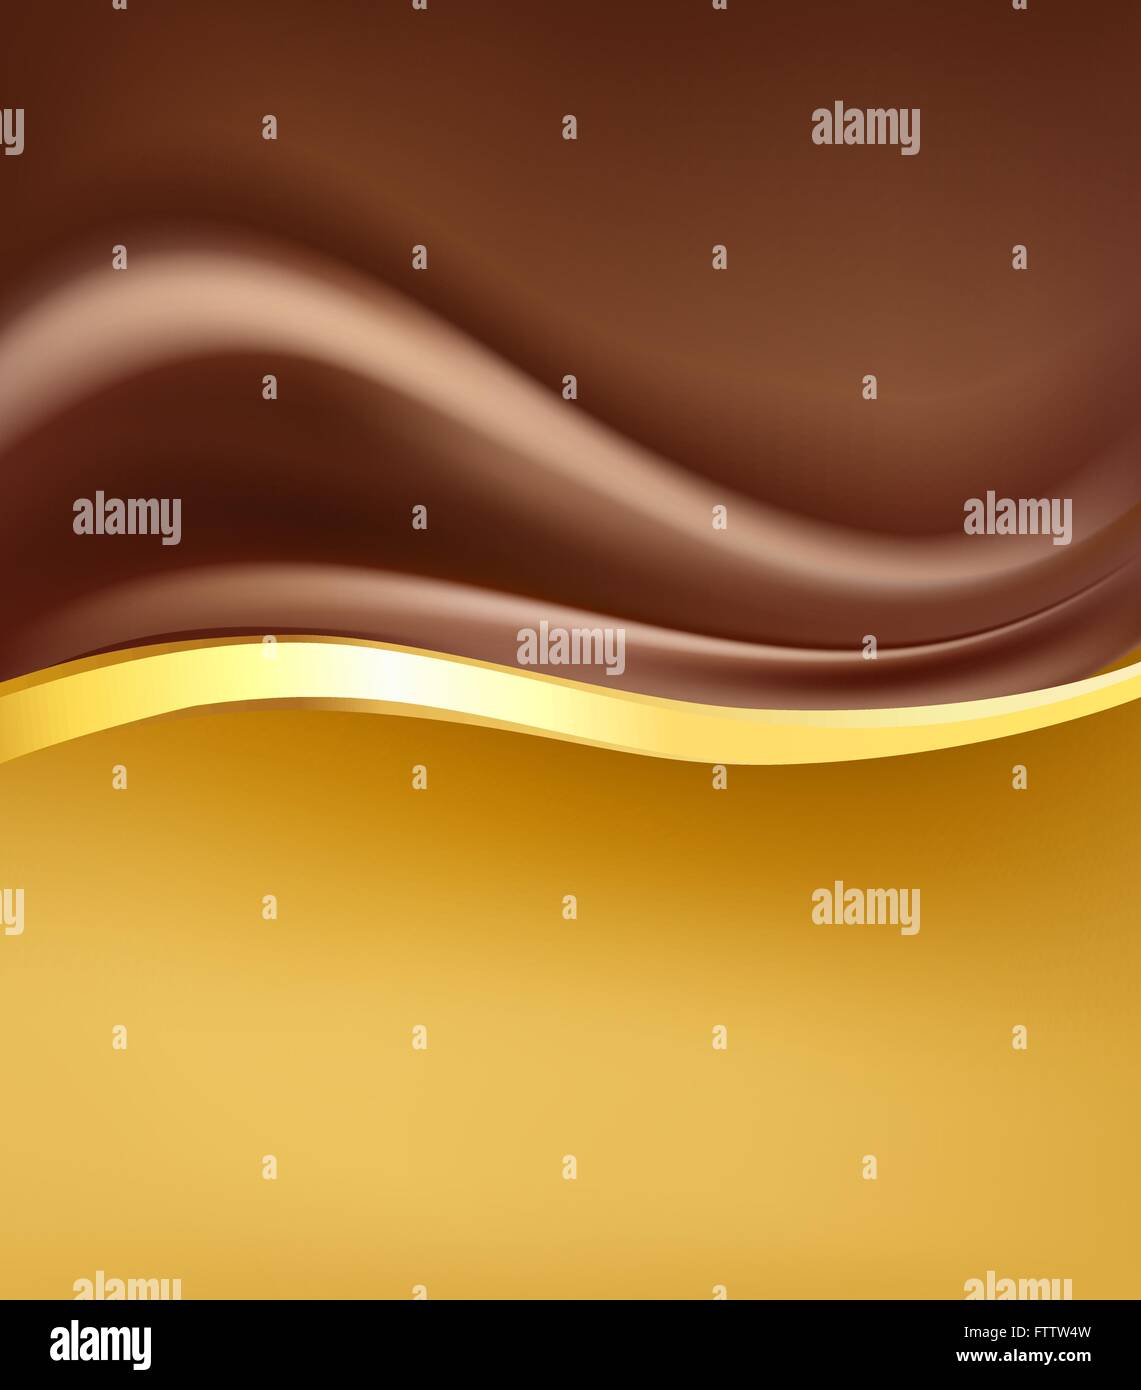 Schokolade cremig abstrakte Backgorund mit gold Rand.  Falten heiße Schokolade Sahne und goldenen Design-Elemente. Vektor Stock Vektor